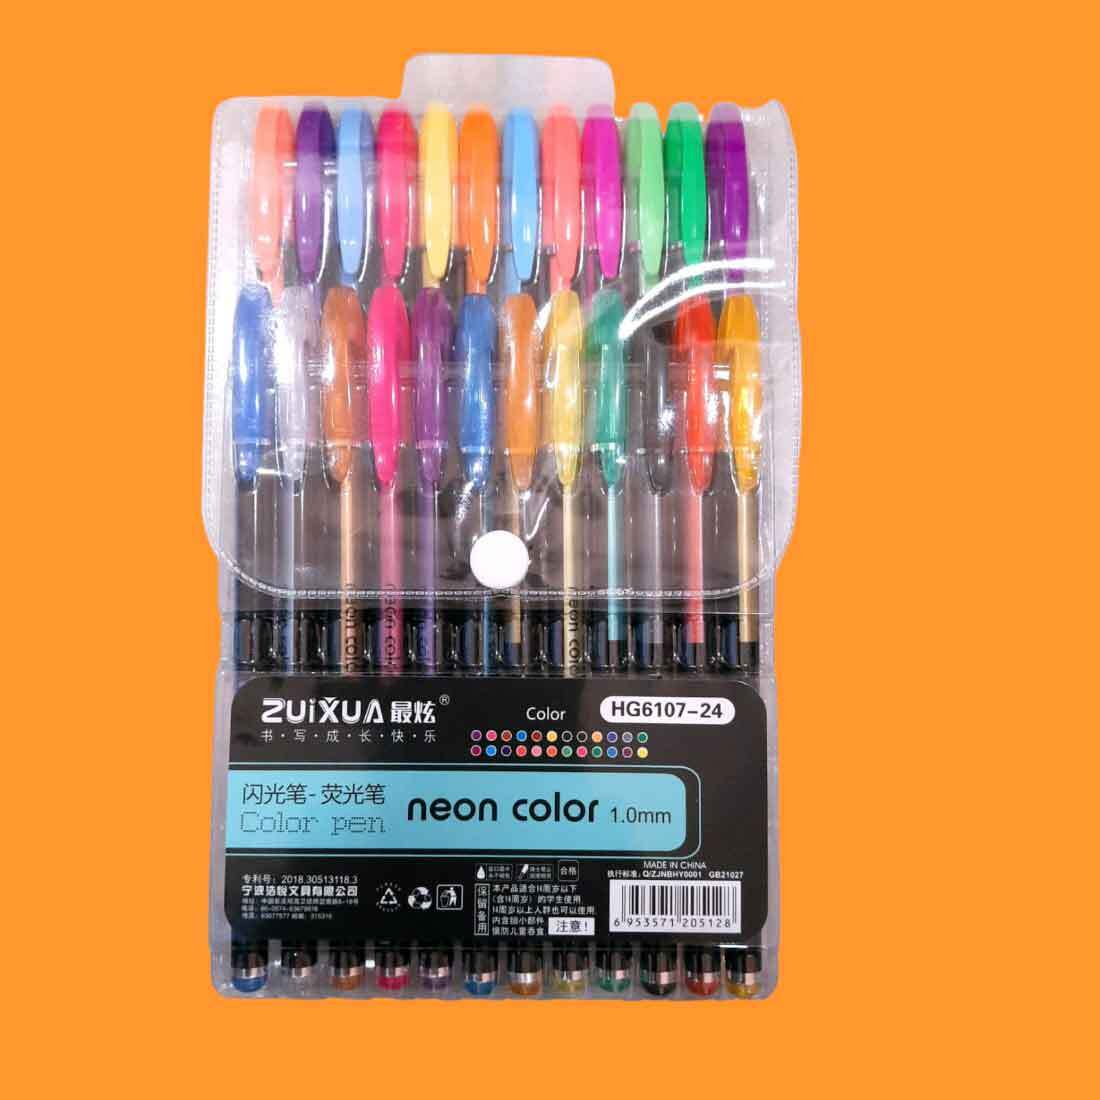 Neon Gel Pens | Fluorescence Highlighter – For Kids Drawing, DIY, Art & Craft - Apkamart